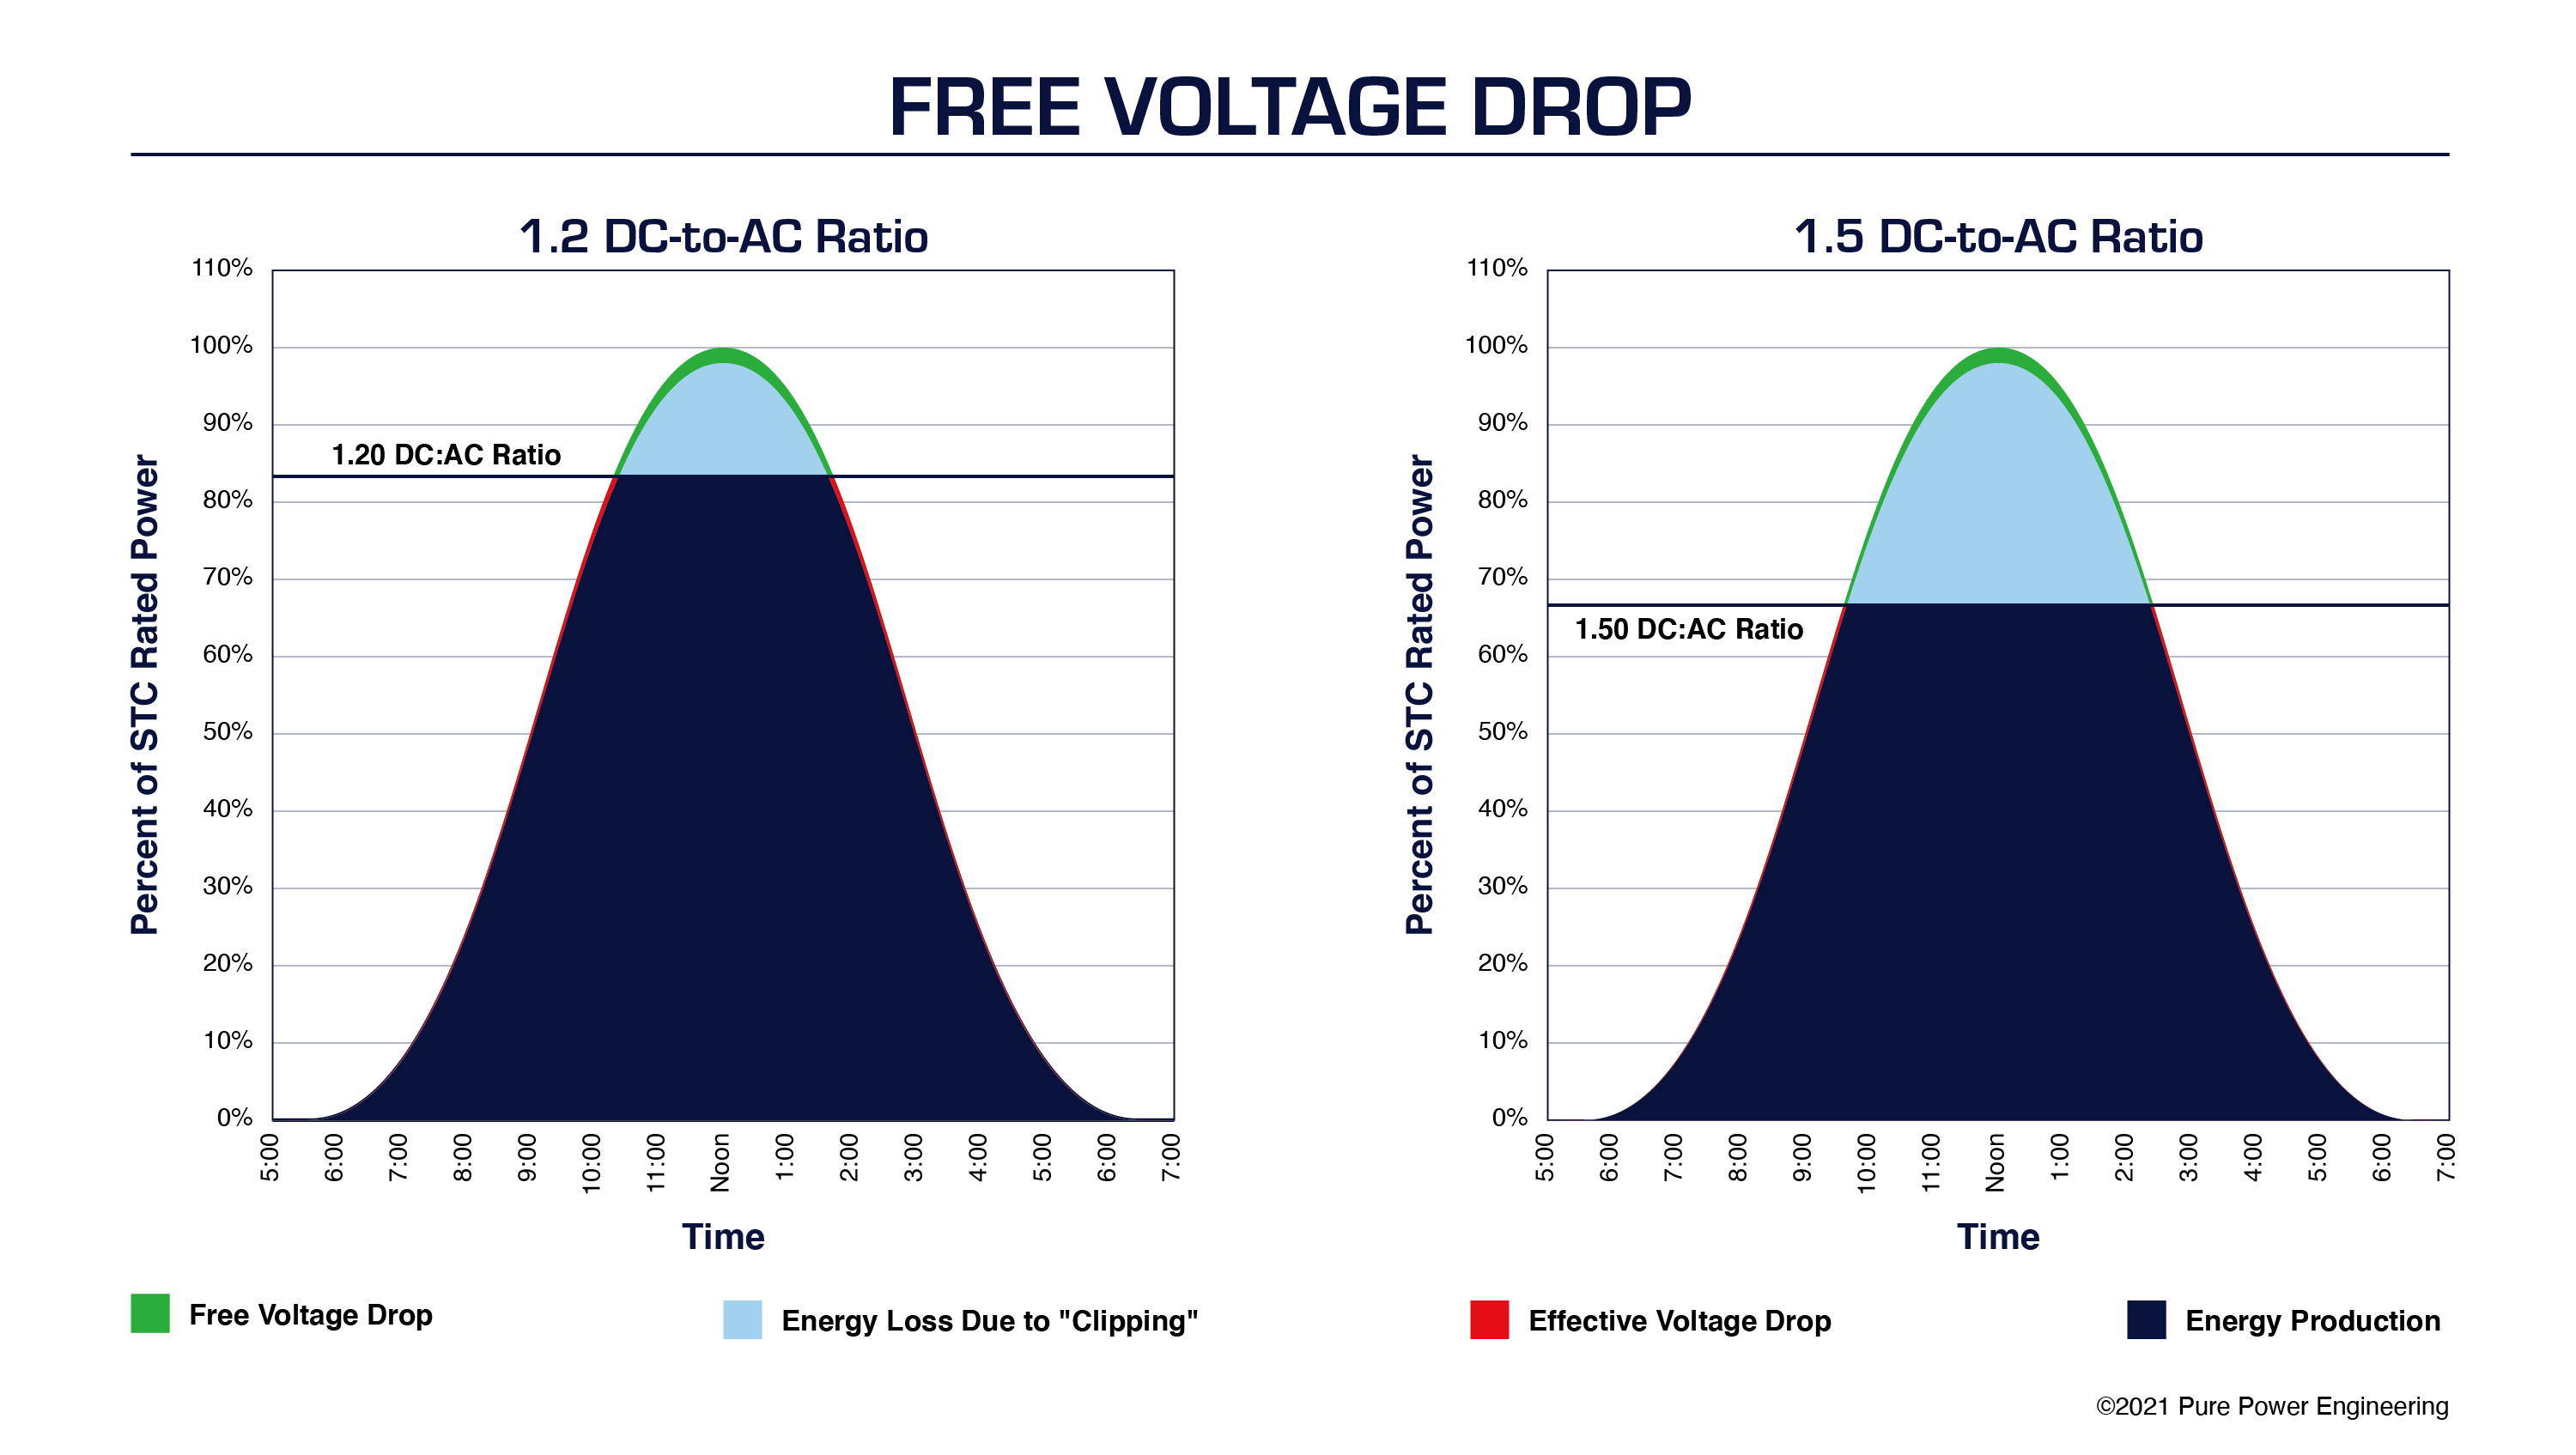 Free Voltage Drop